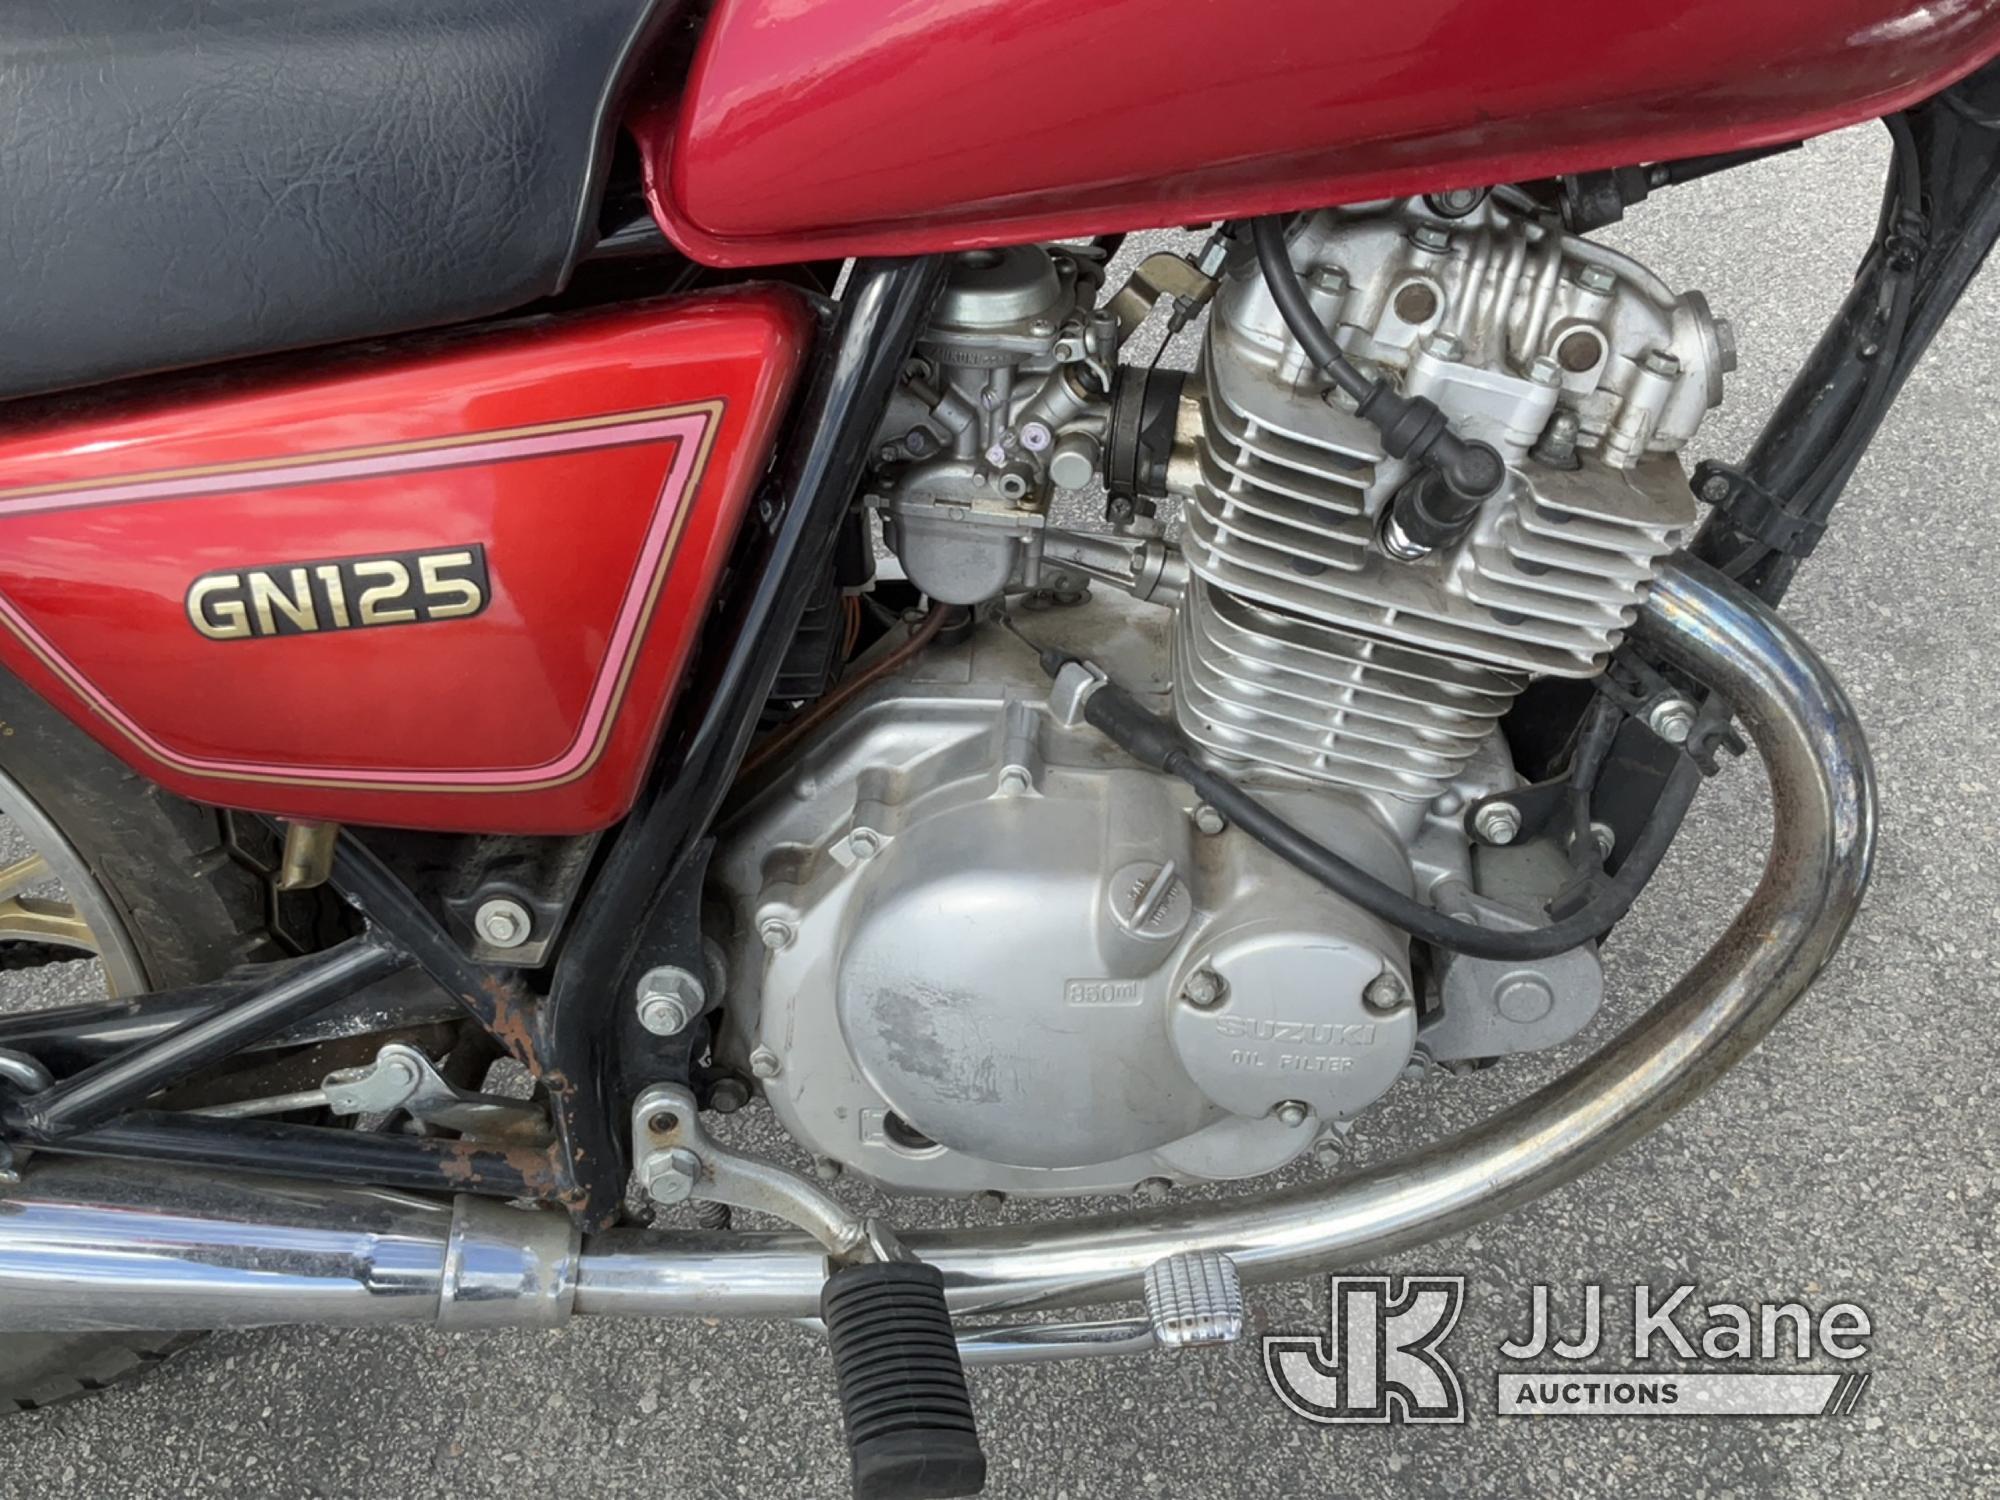 (Salt Lake City, UT) 1993 Suzuki GN125 Motorcycle Not Running, Condition Unknown